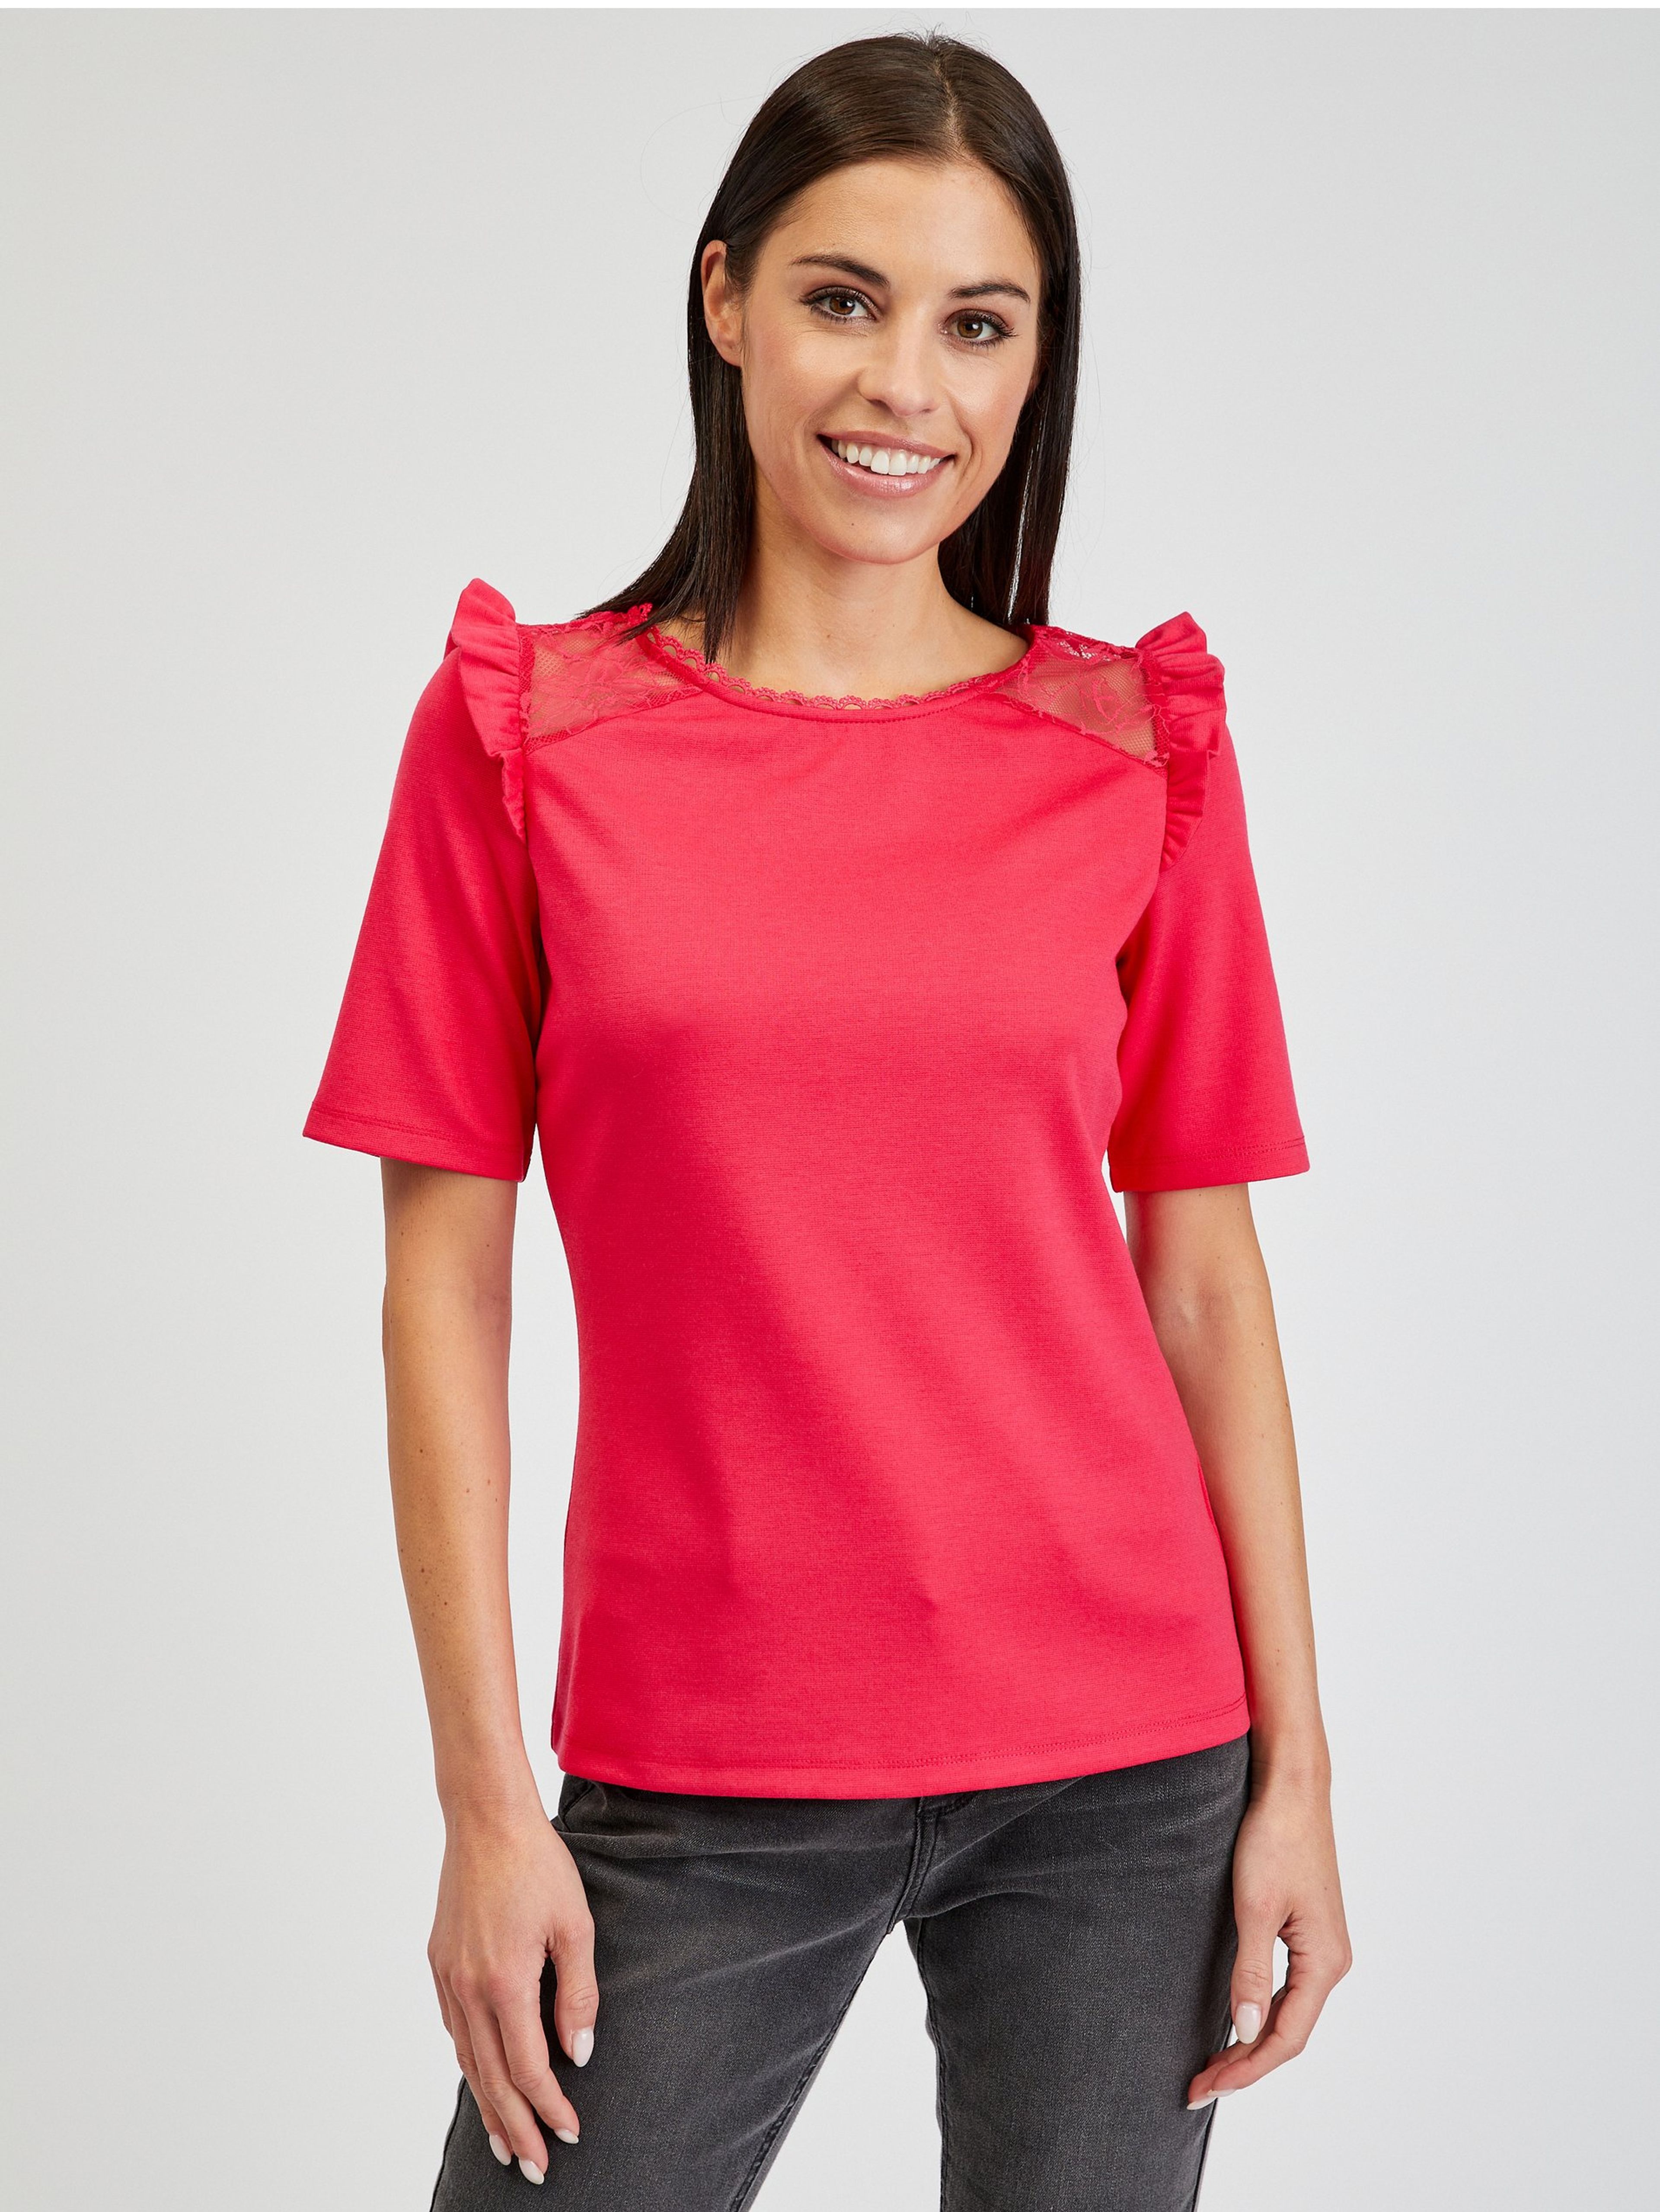 Tmavě růžové dámské tričko s průstřihem na zádech ORSAY